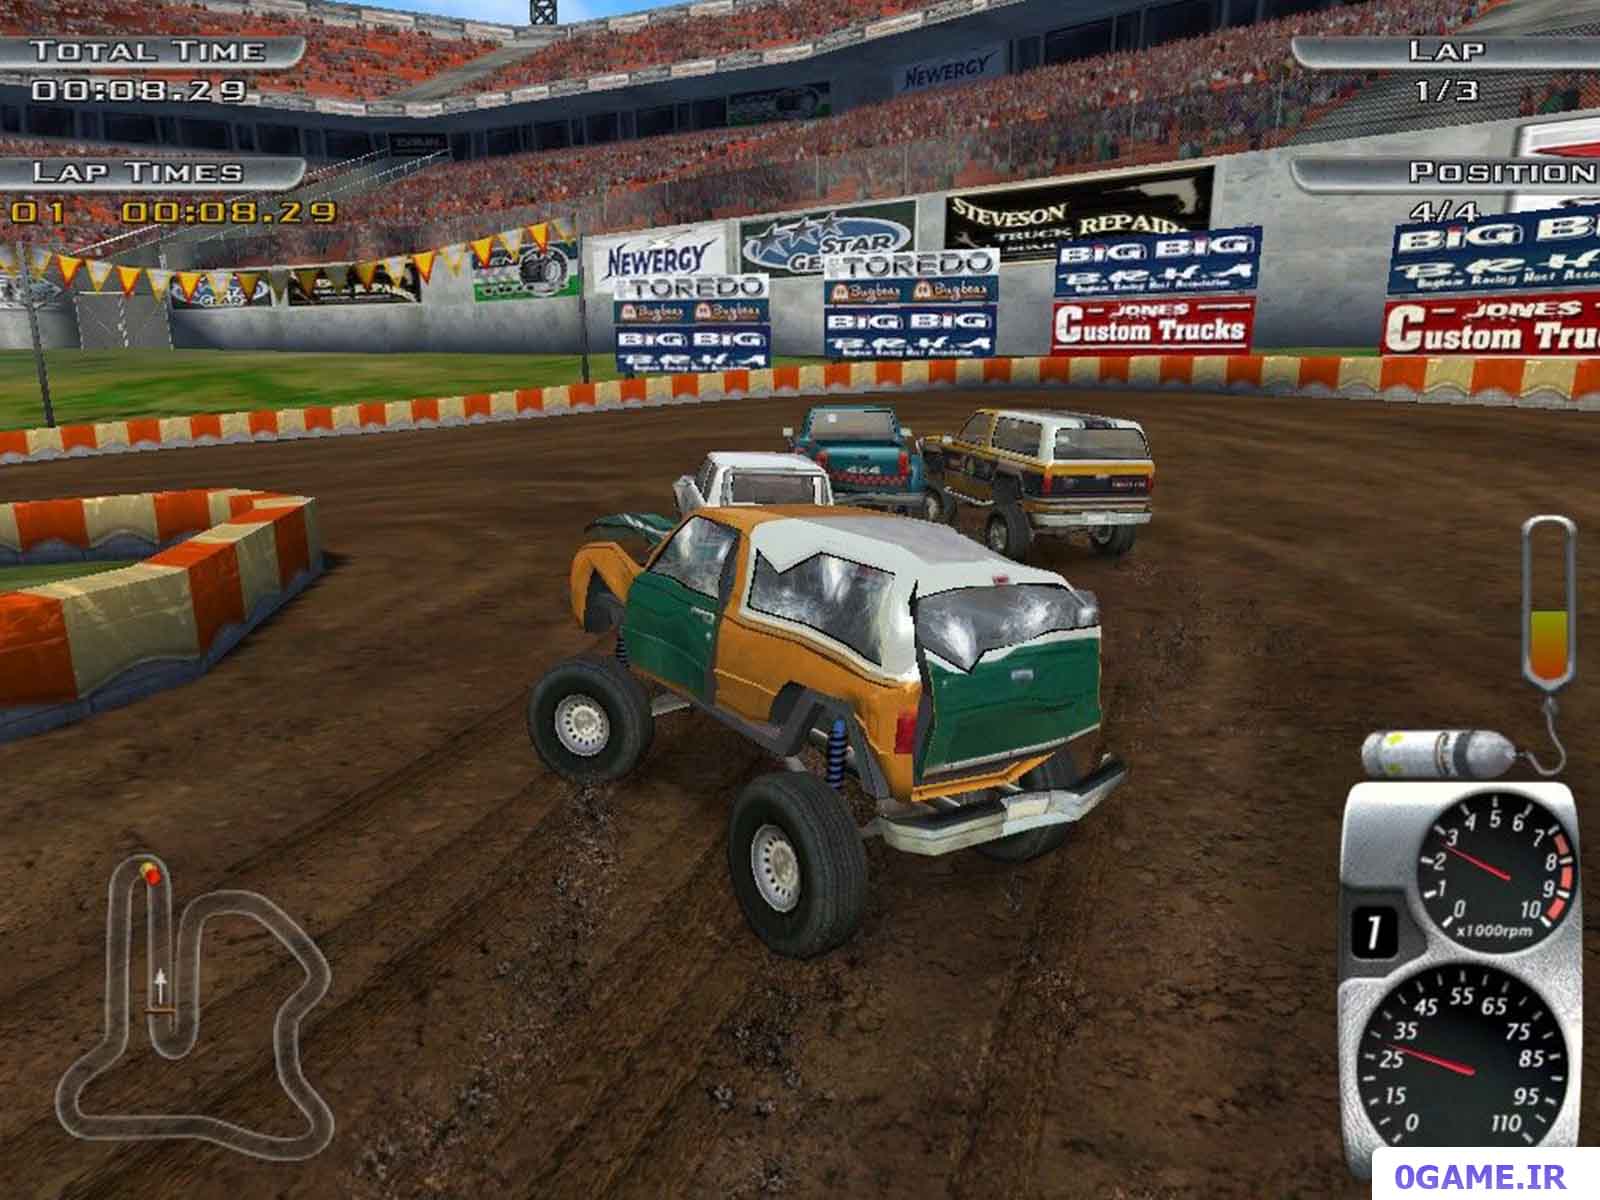 دانلود بازی کامیون های سخت (Tough Trucks: Modified Monsters) نسخه کامل برای کامپیوتر